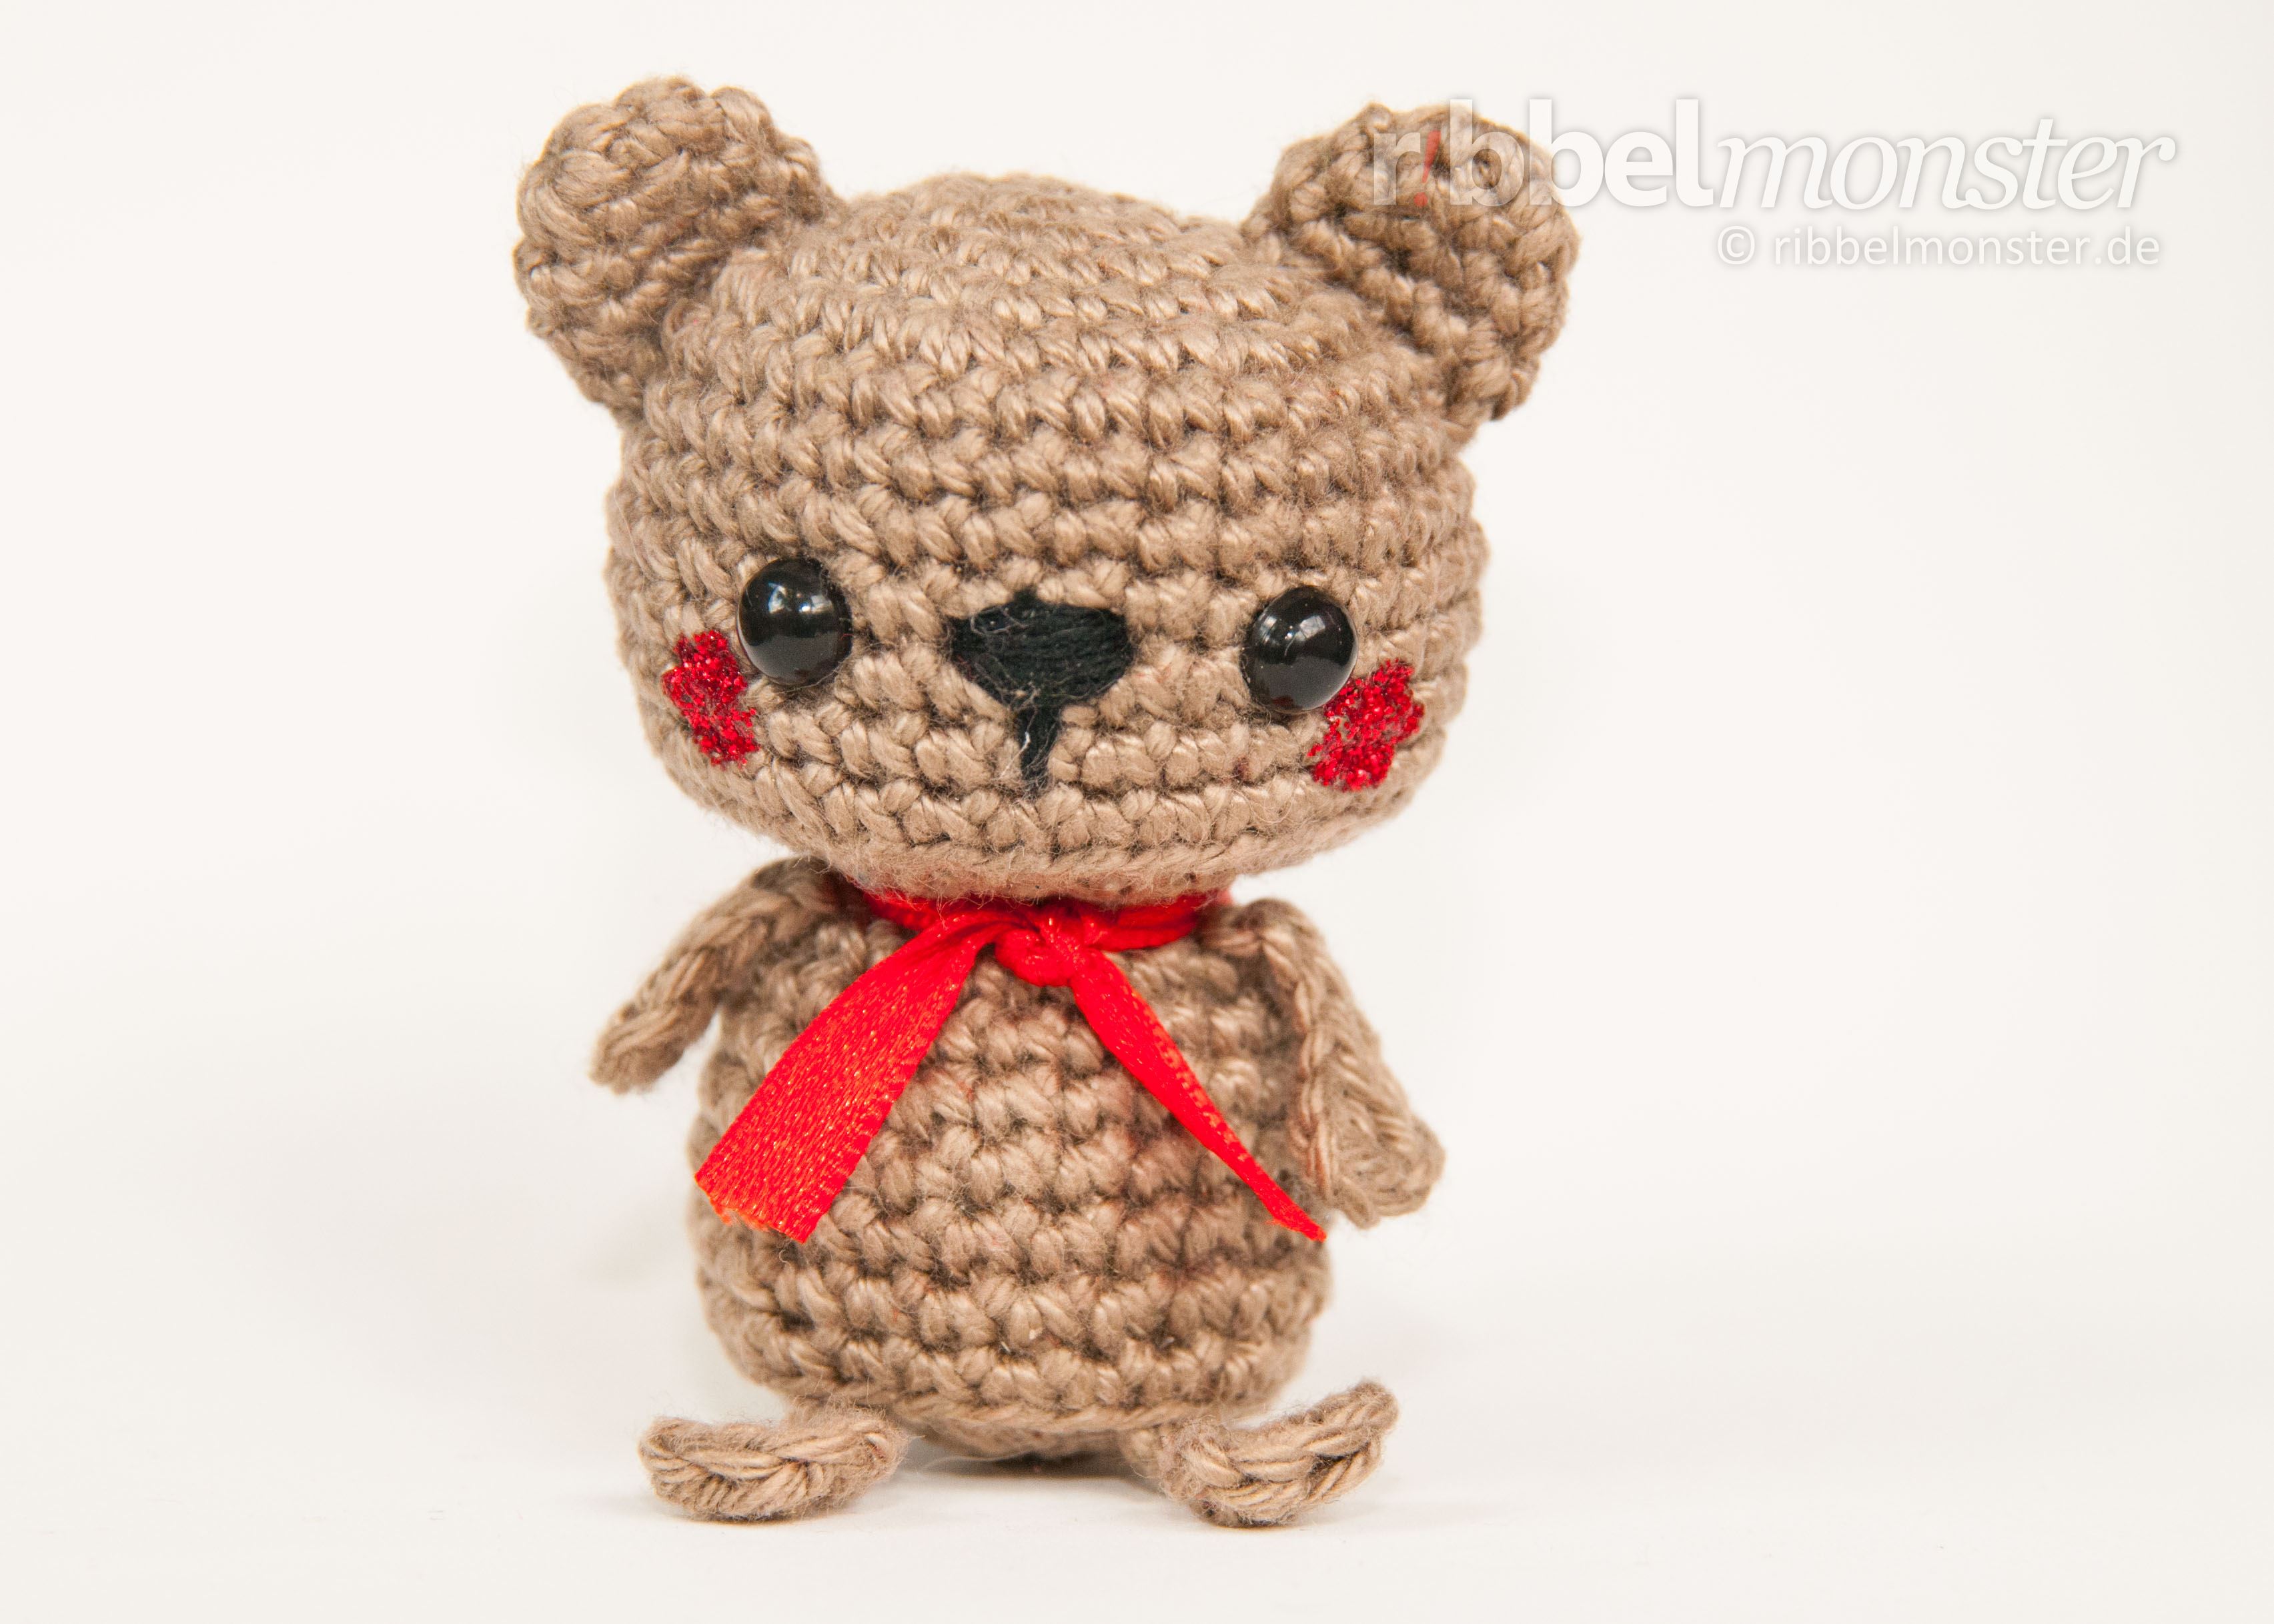 Amigurumi - Minimee Crochet Brown Bear - Balu - pattern - free crochet pattern